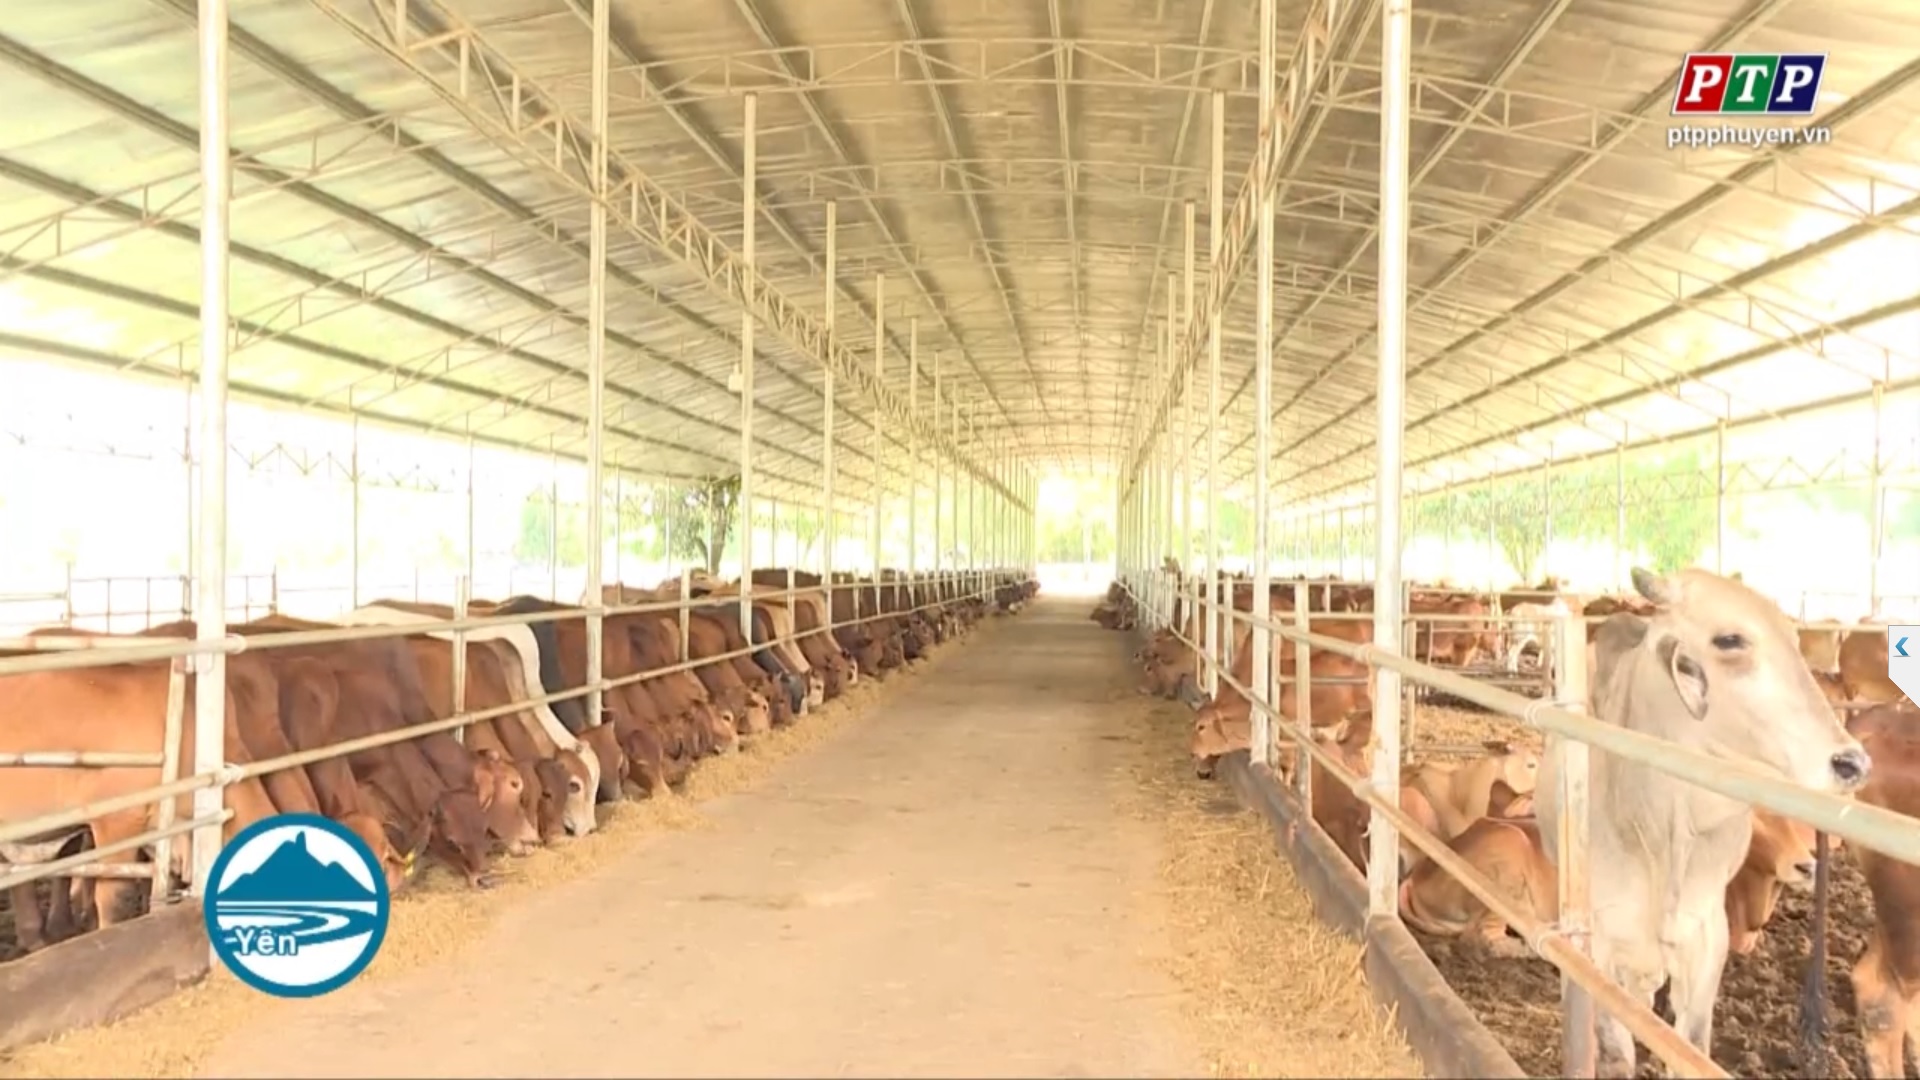 Tây Hòa: Nuôi bò cao sản xuất khẩu, hướng  đi mới để phát triển ngành chăn nuôi địa phương